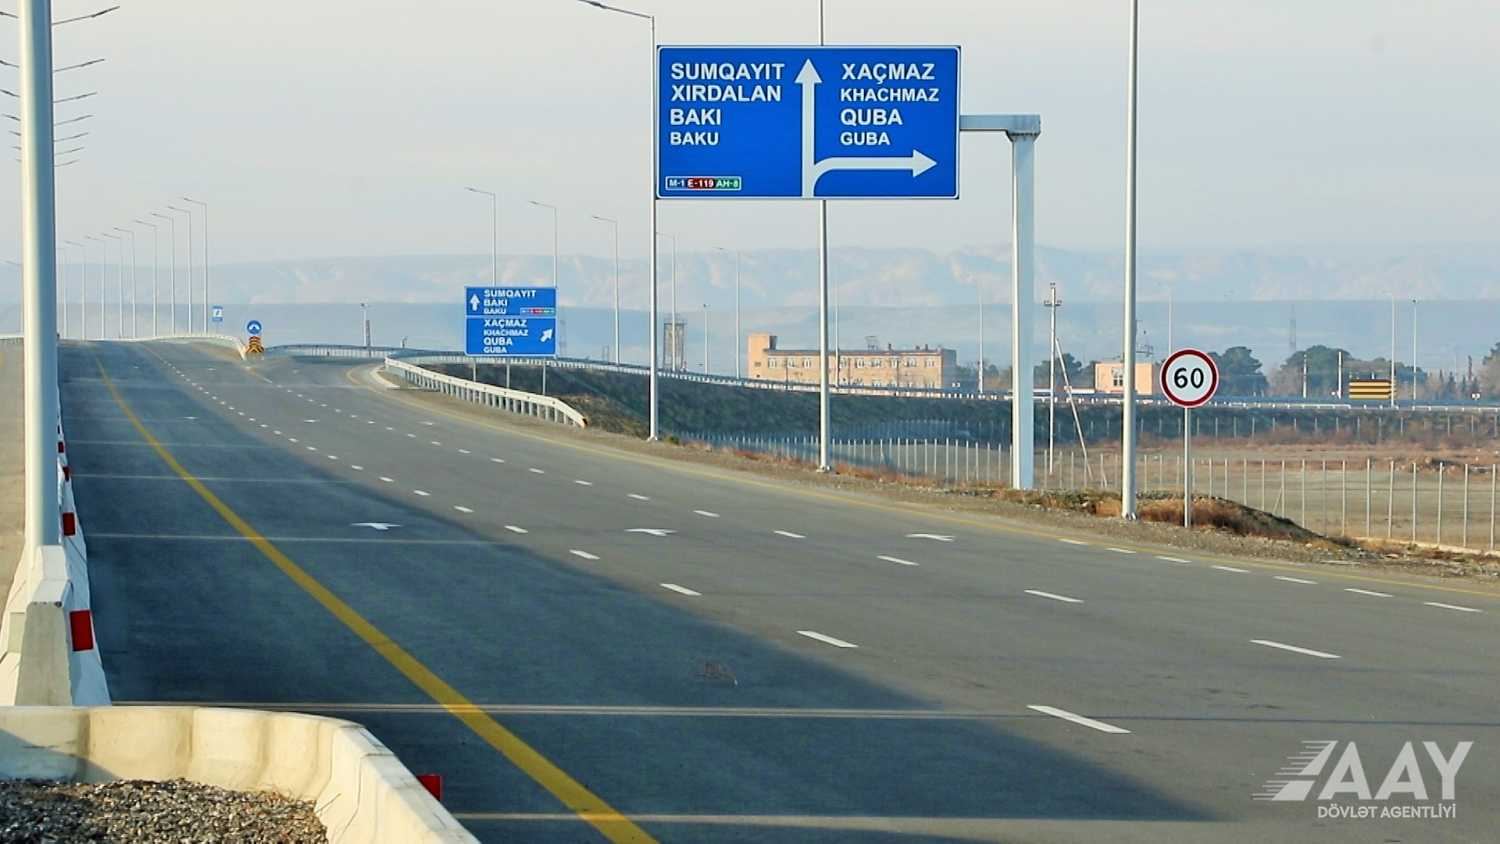 Bakı-Quba-Rusiya sərhədi avtomobil yolunun tikintisi davam etdirilir (FOTO/VİDEO)